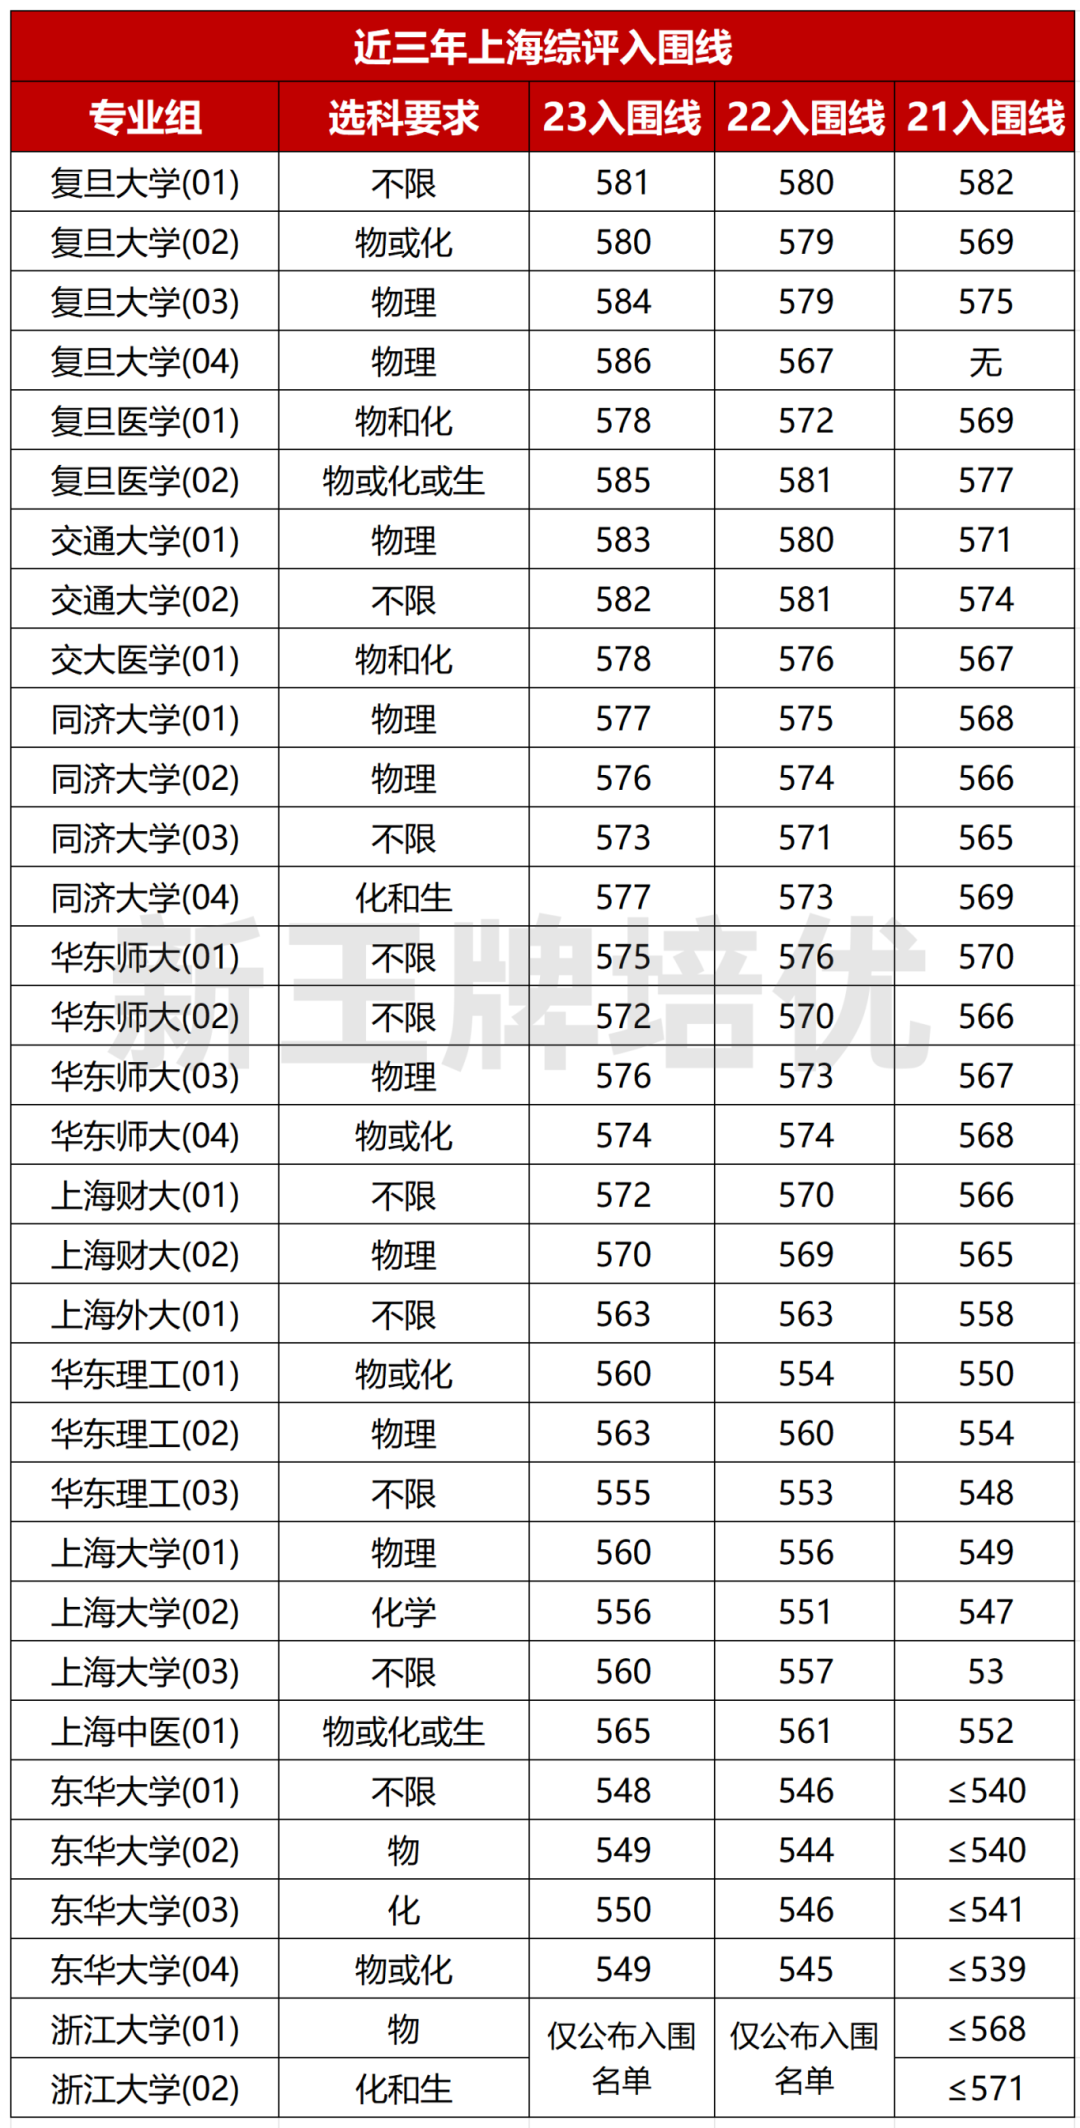 上海近年综评录取分数要求